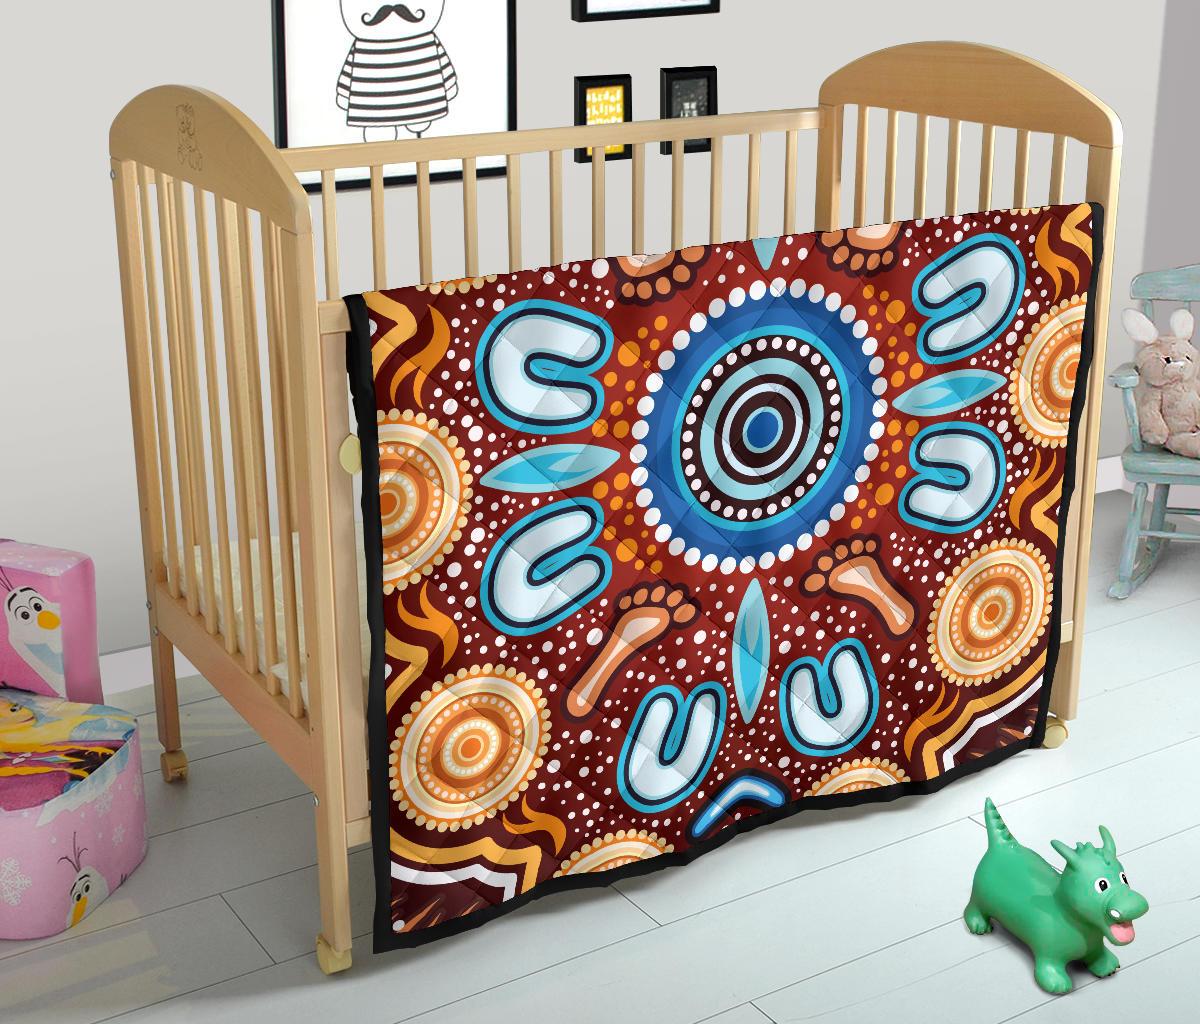 Aboriginal Premium Quilt - Indigenous Circle Dot Painting Ver02